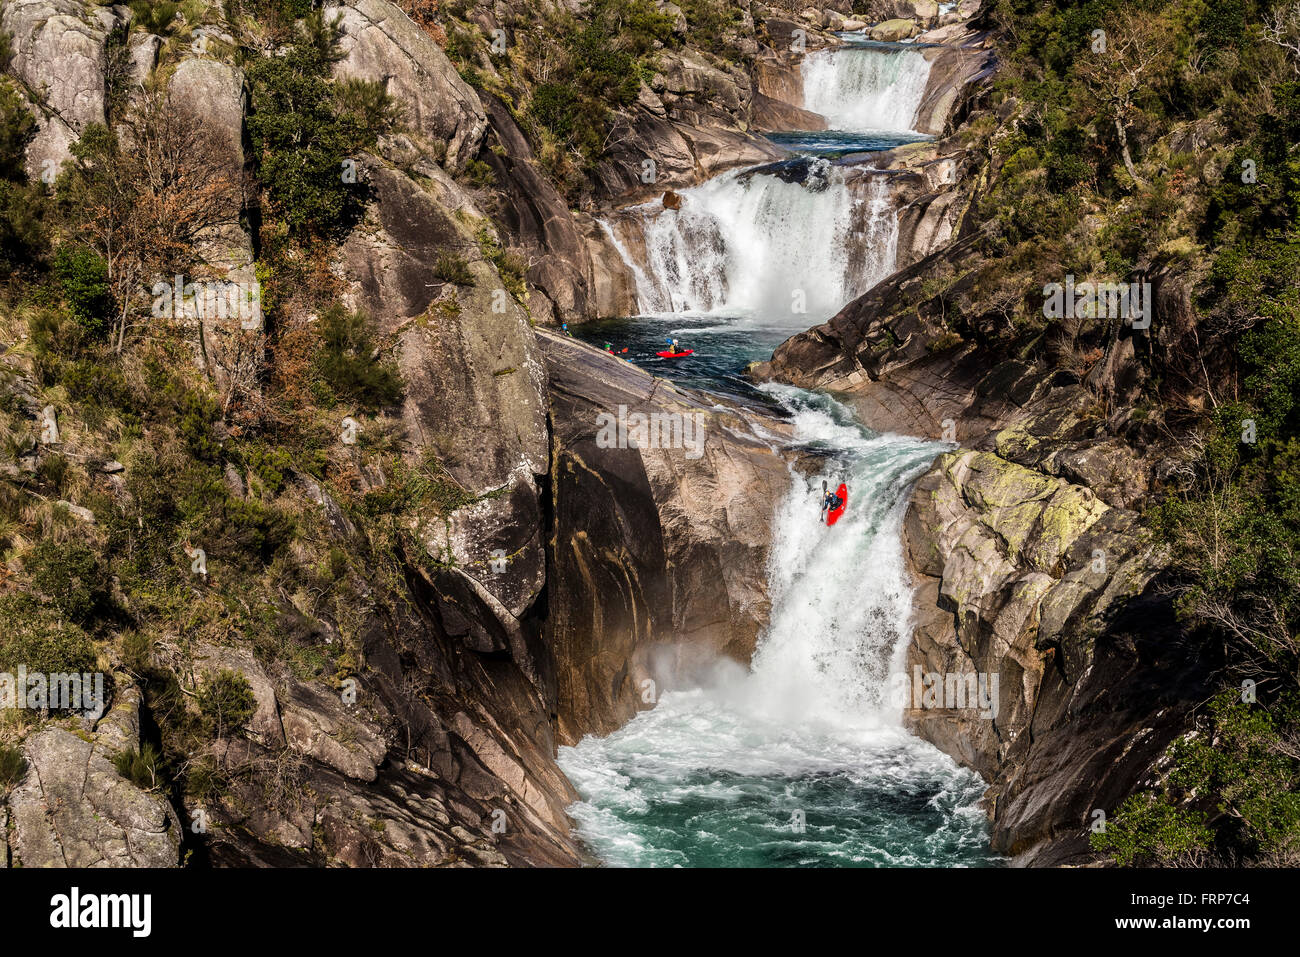 Kayak dans les cascades, au Portugal Banque D'Images